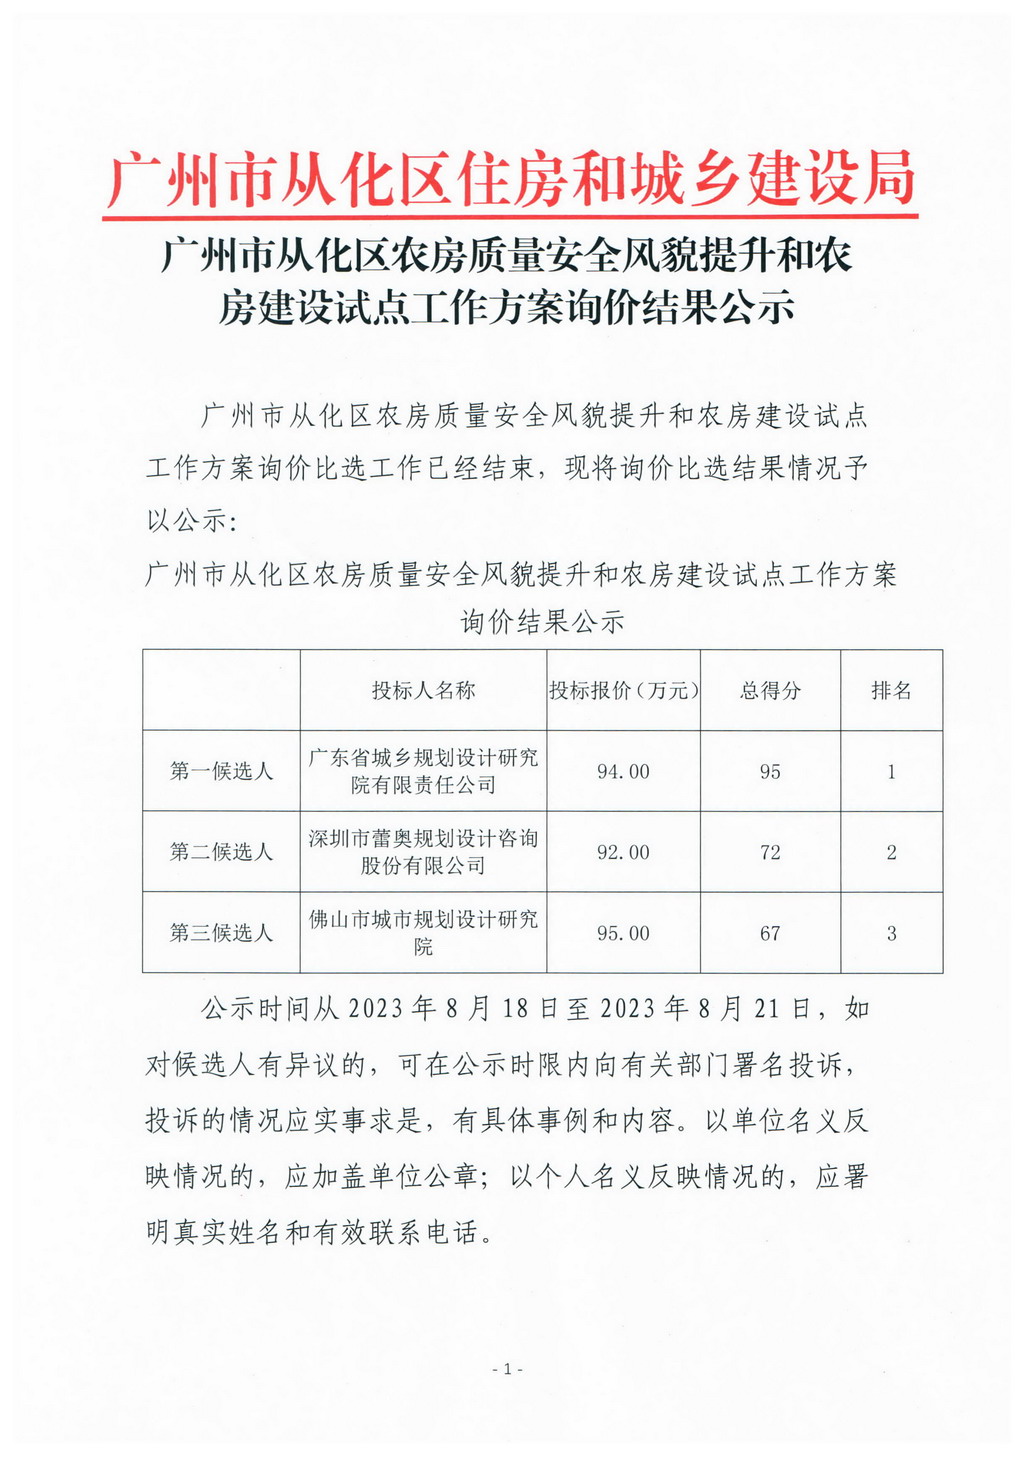 广州市从化区农房质量安全风貌提升和农房建设试点工作方案询价结果公示_页面_1.jpg